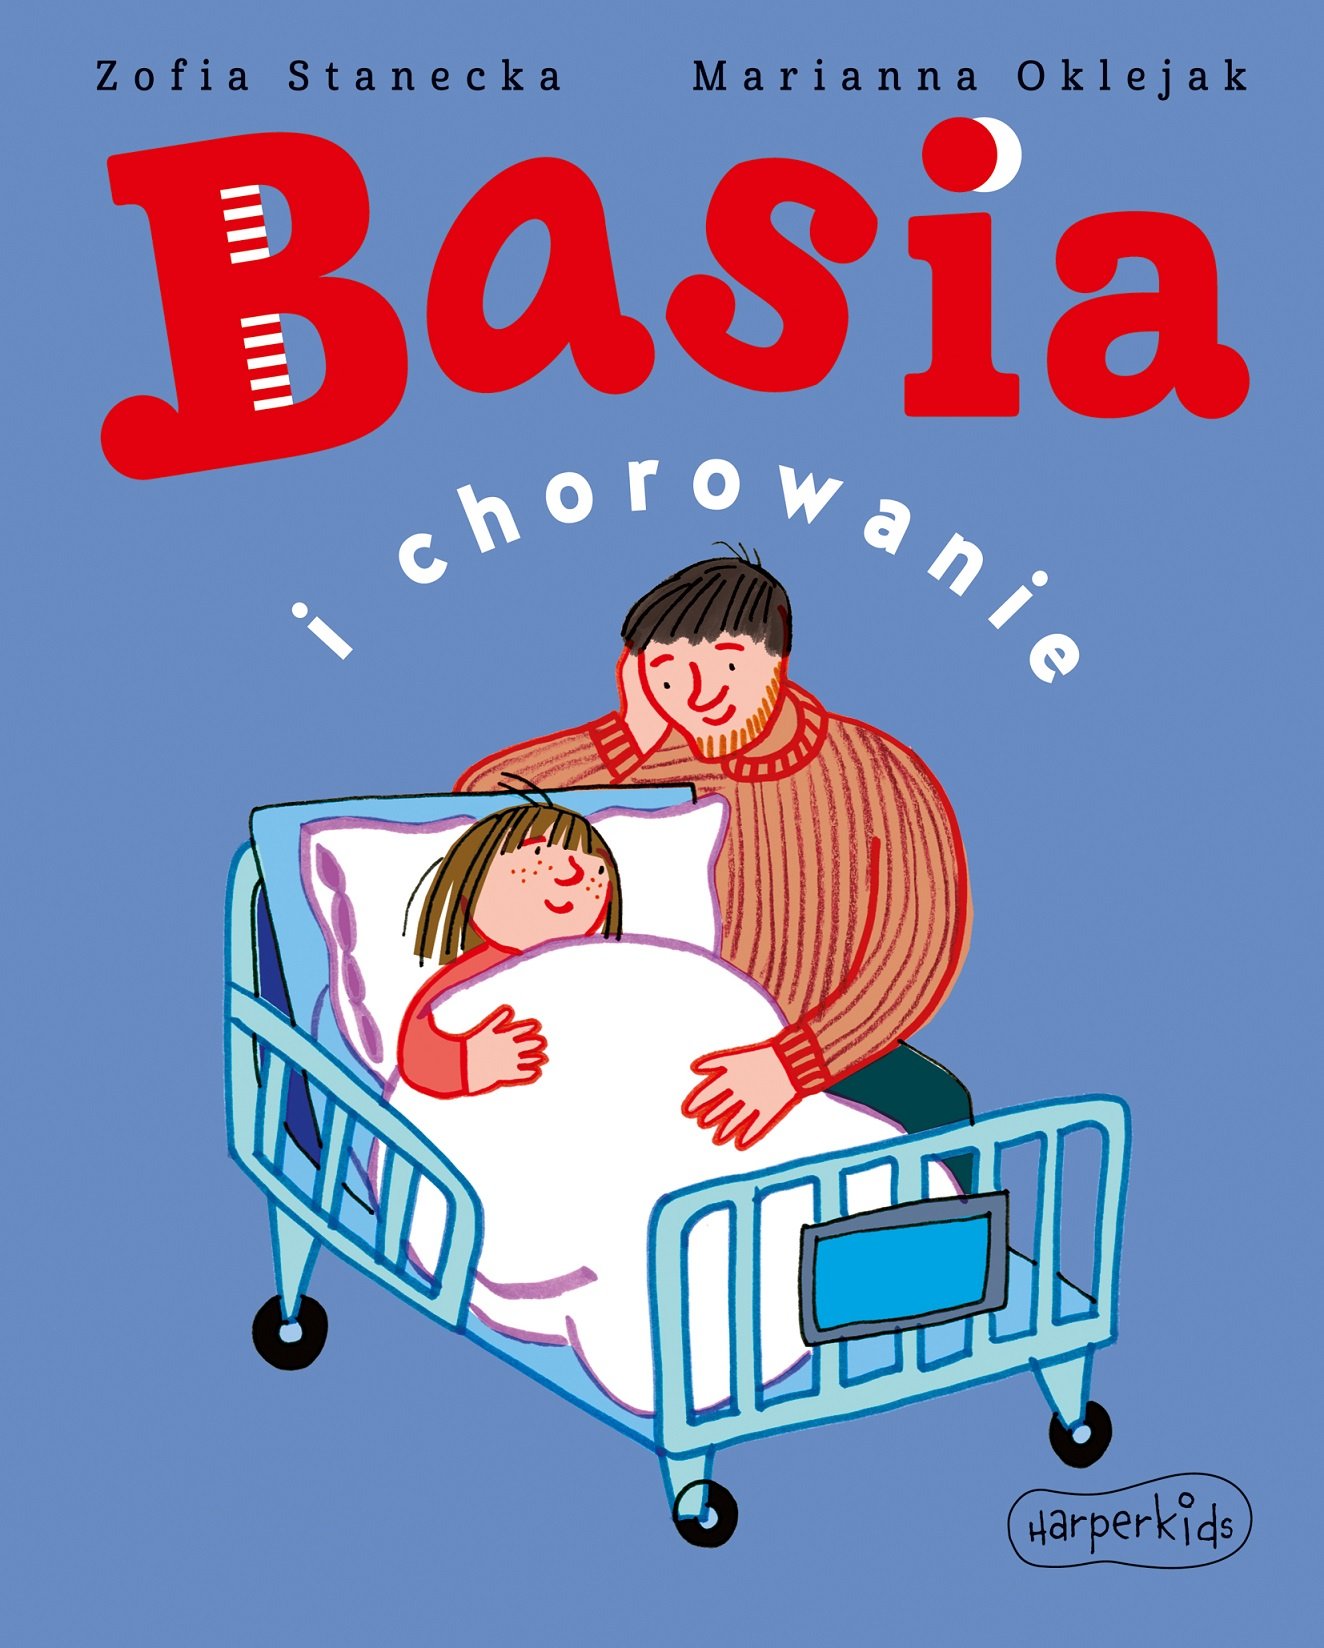 Basia i chorowanie - książka dla najmłodszych